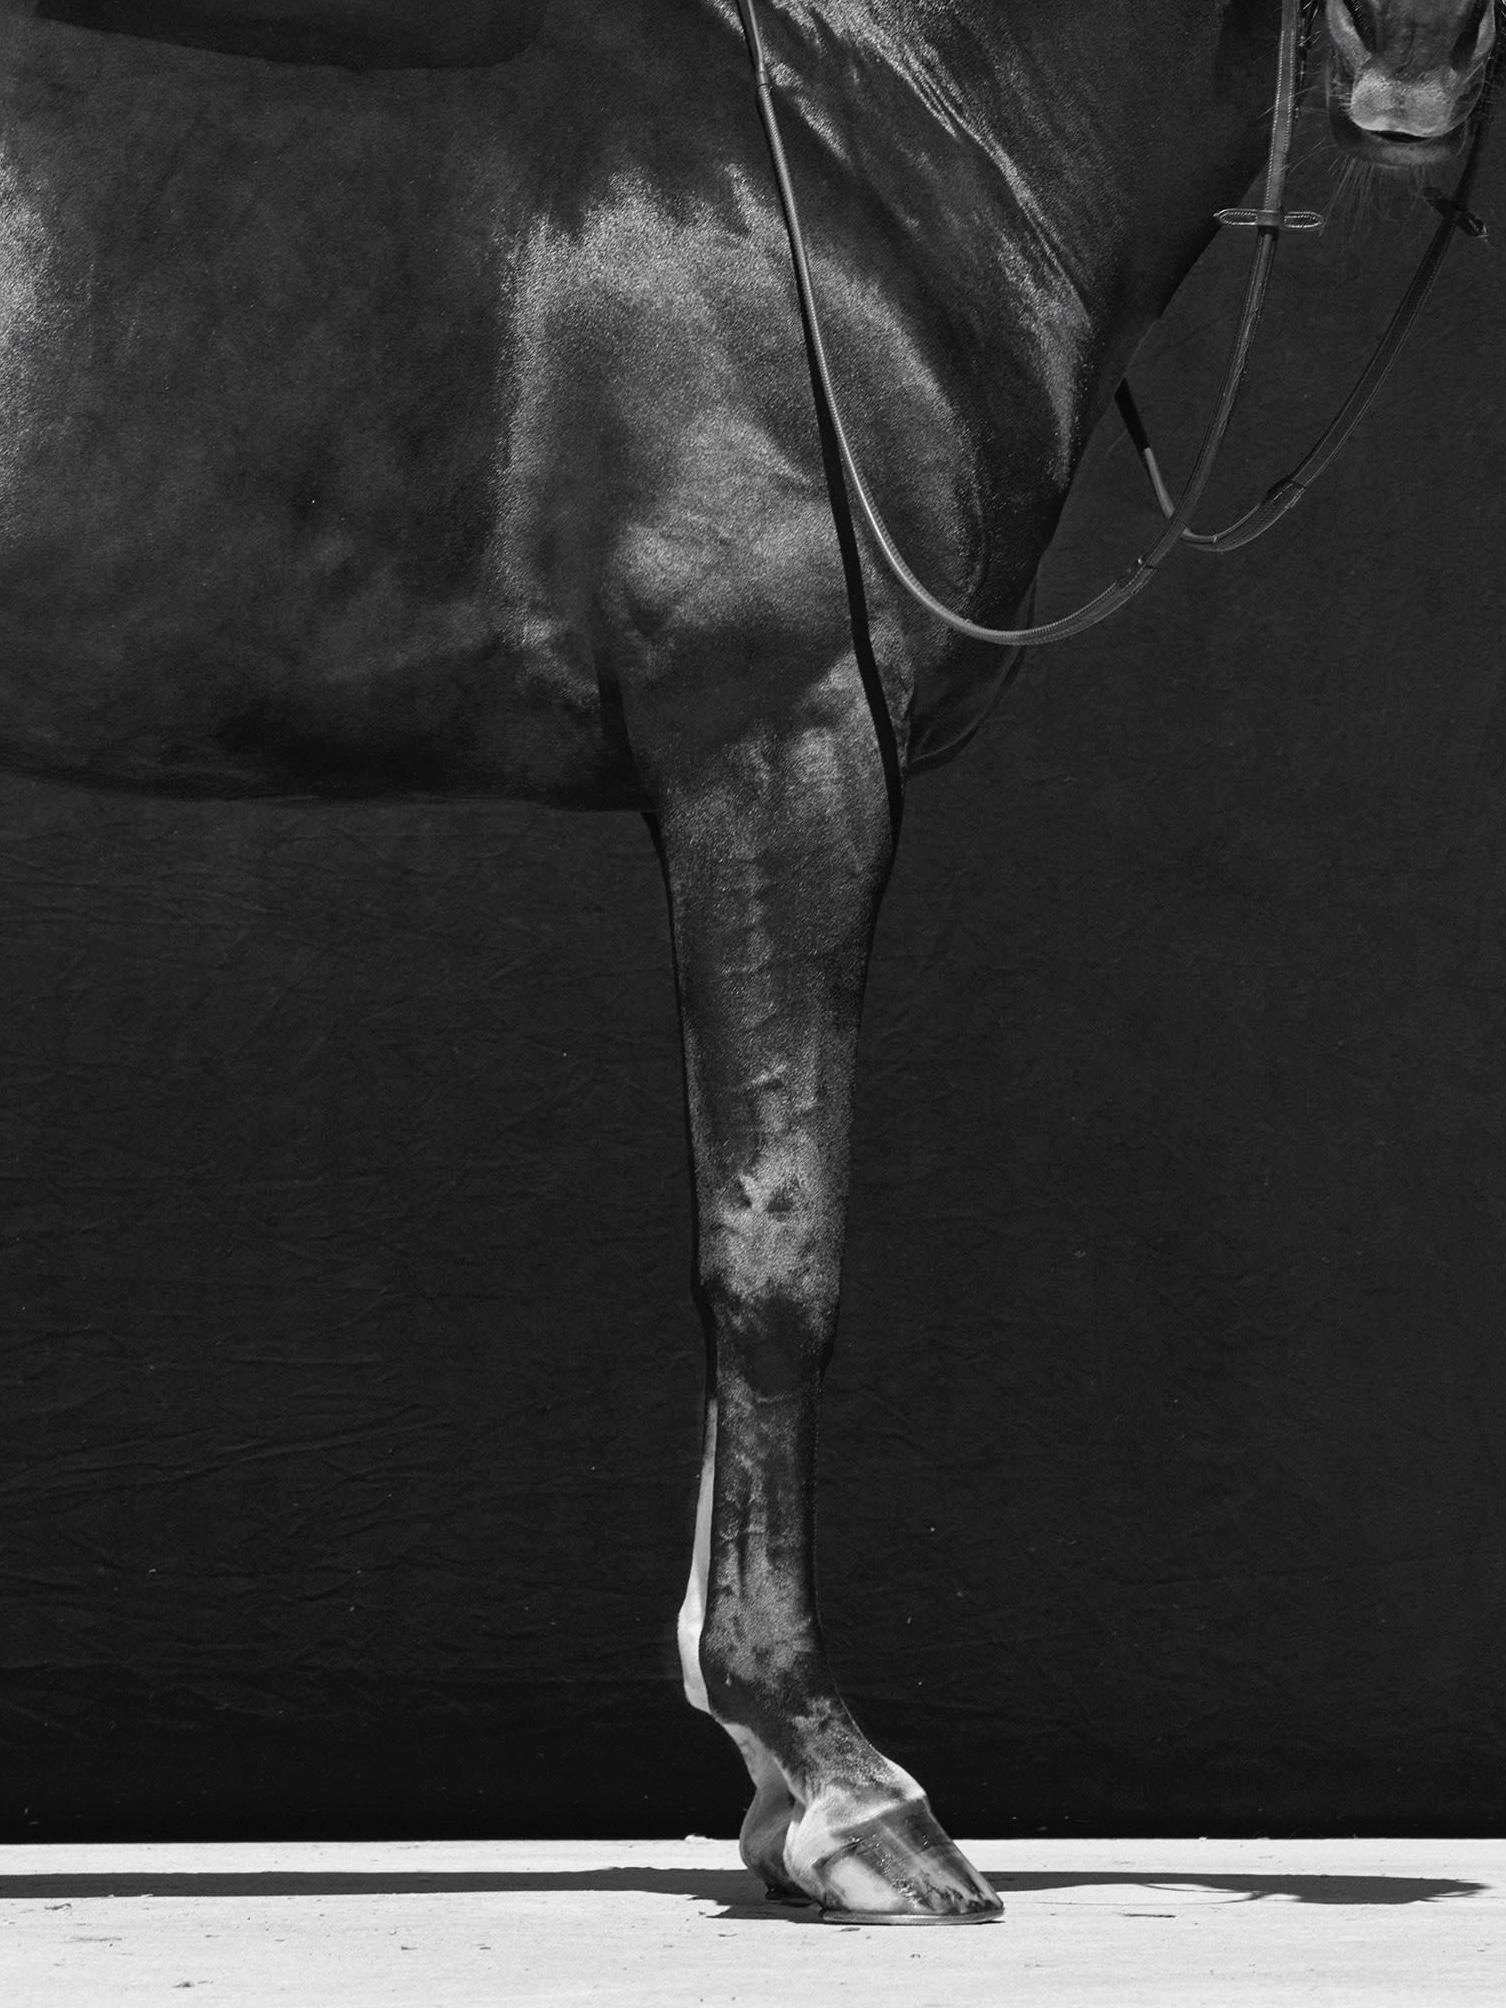 Brainpower Triptychon, 2018 von Juan Lamarca
Hochwertiges archivfestes Baumwollpapier
Bildgröße: 17 x 13 Zoll
Ausgabe 4 von 7 plus 2 AP
Ungerahmt

Die Horse Series von Juan Lamarca ist eine abstrakte Sammlung von Fotografien, die Hochleistungspferde